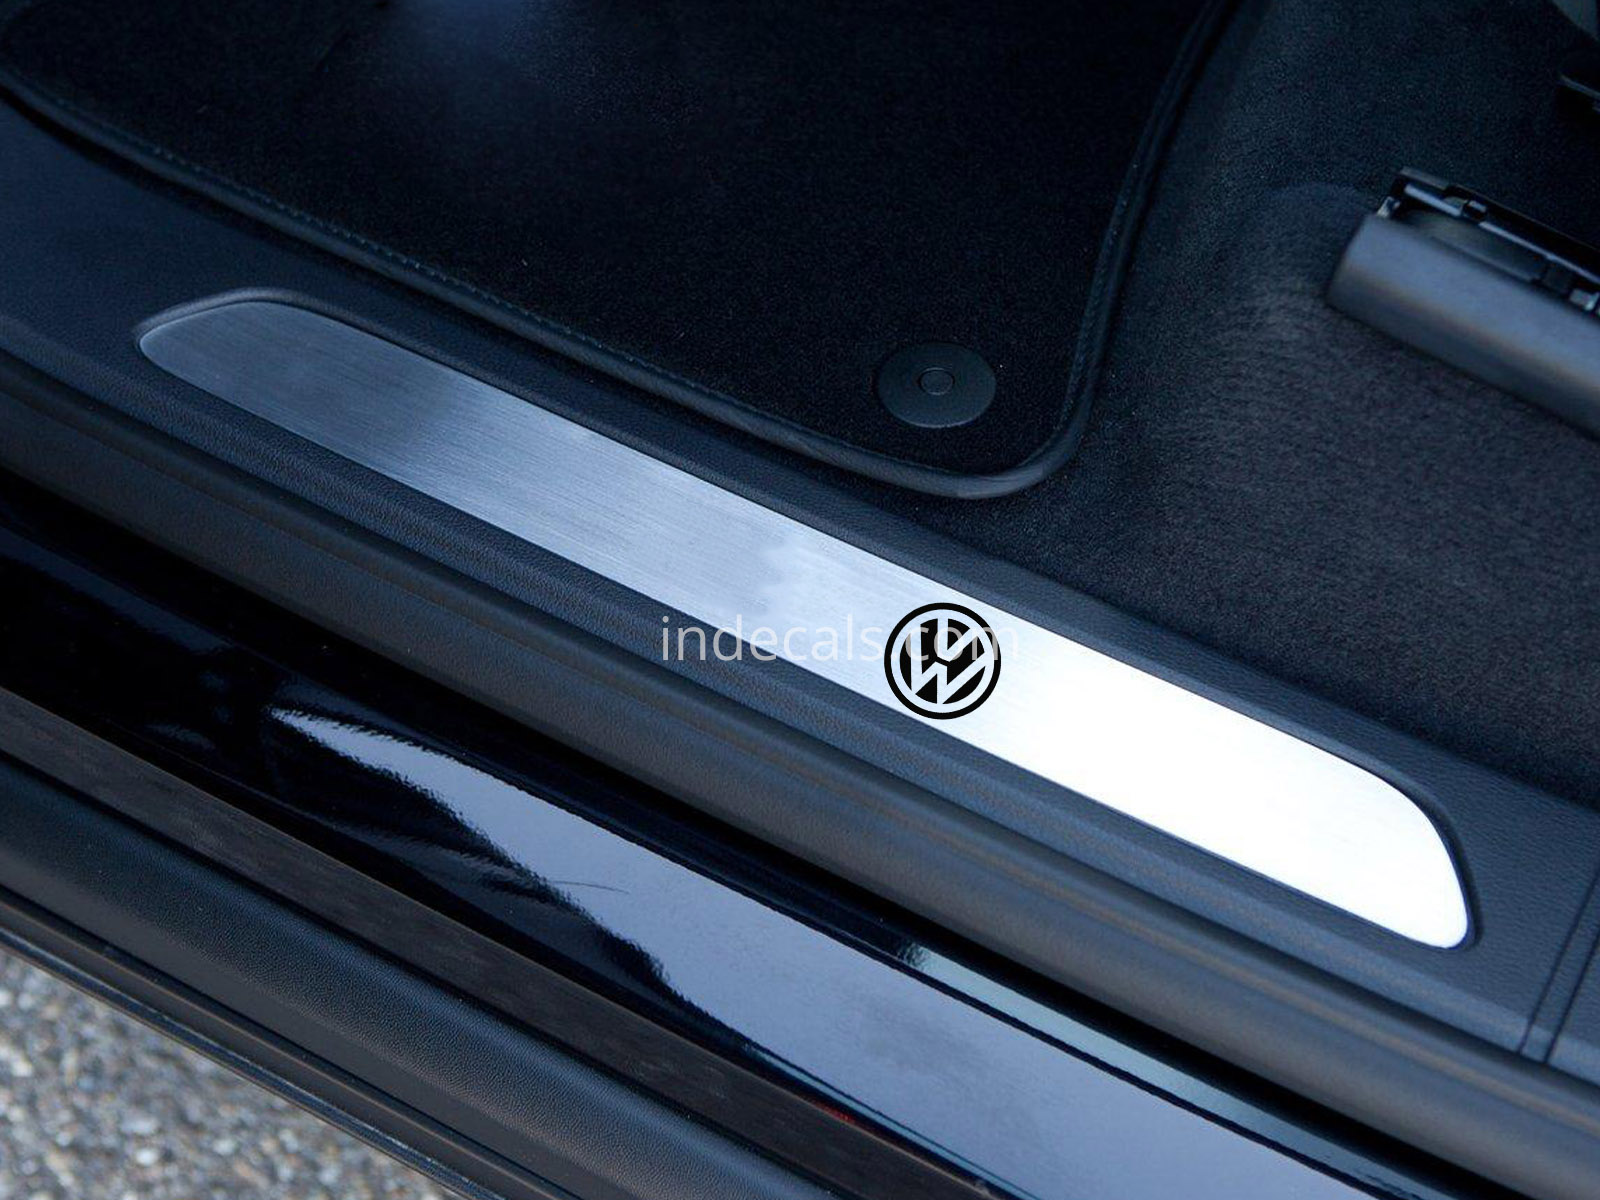 6 x Volkswagen Stickers for Door Sills - Black